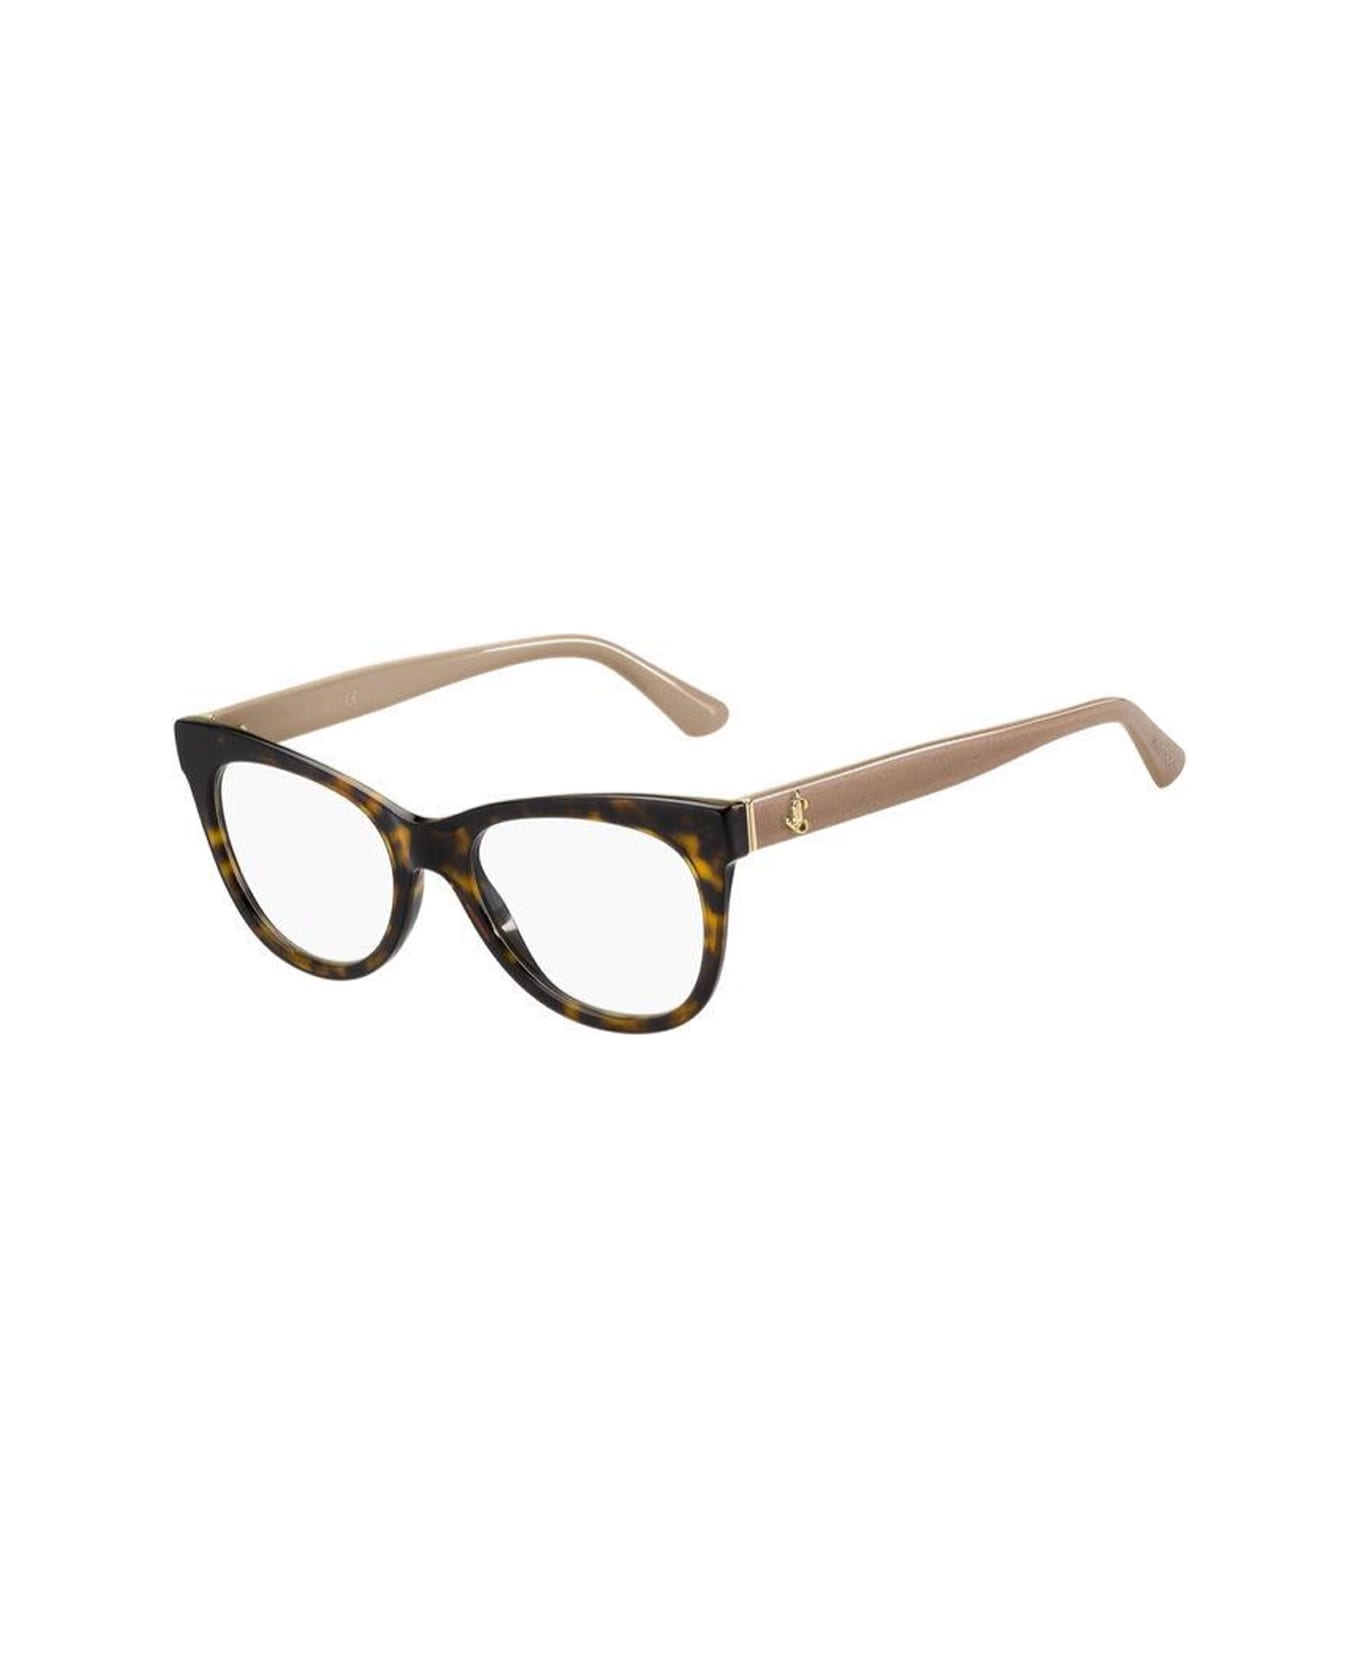 Jimmy Choo Eyewear Jc276 Ons/19 Glasses - Marrone